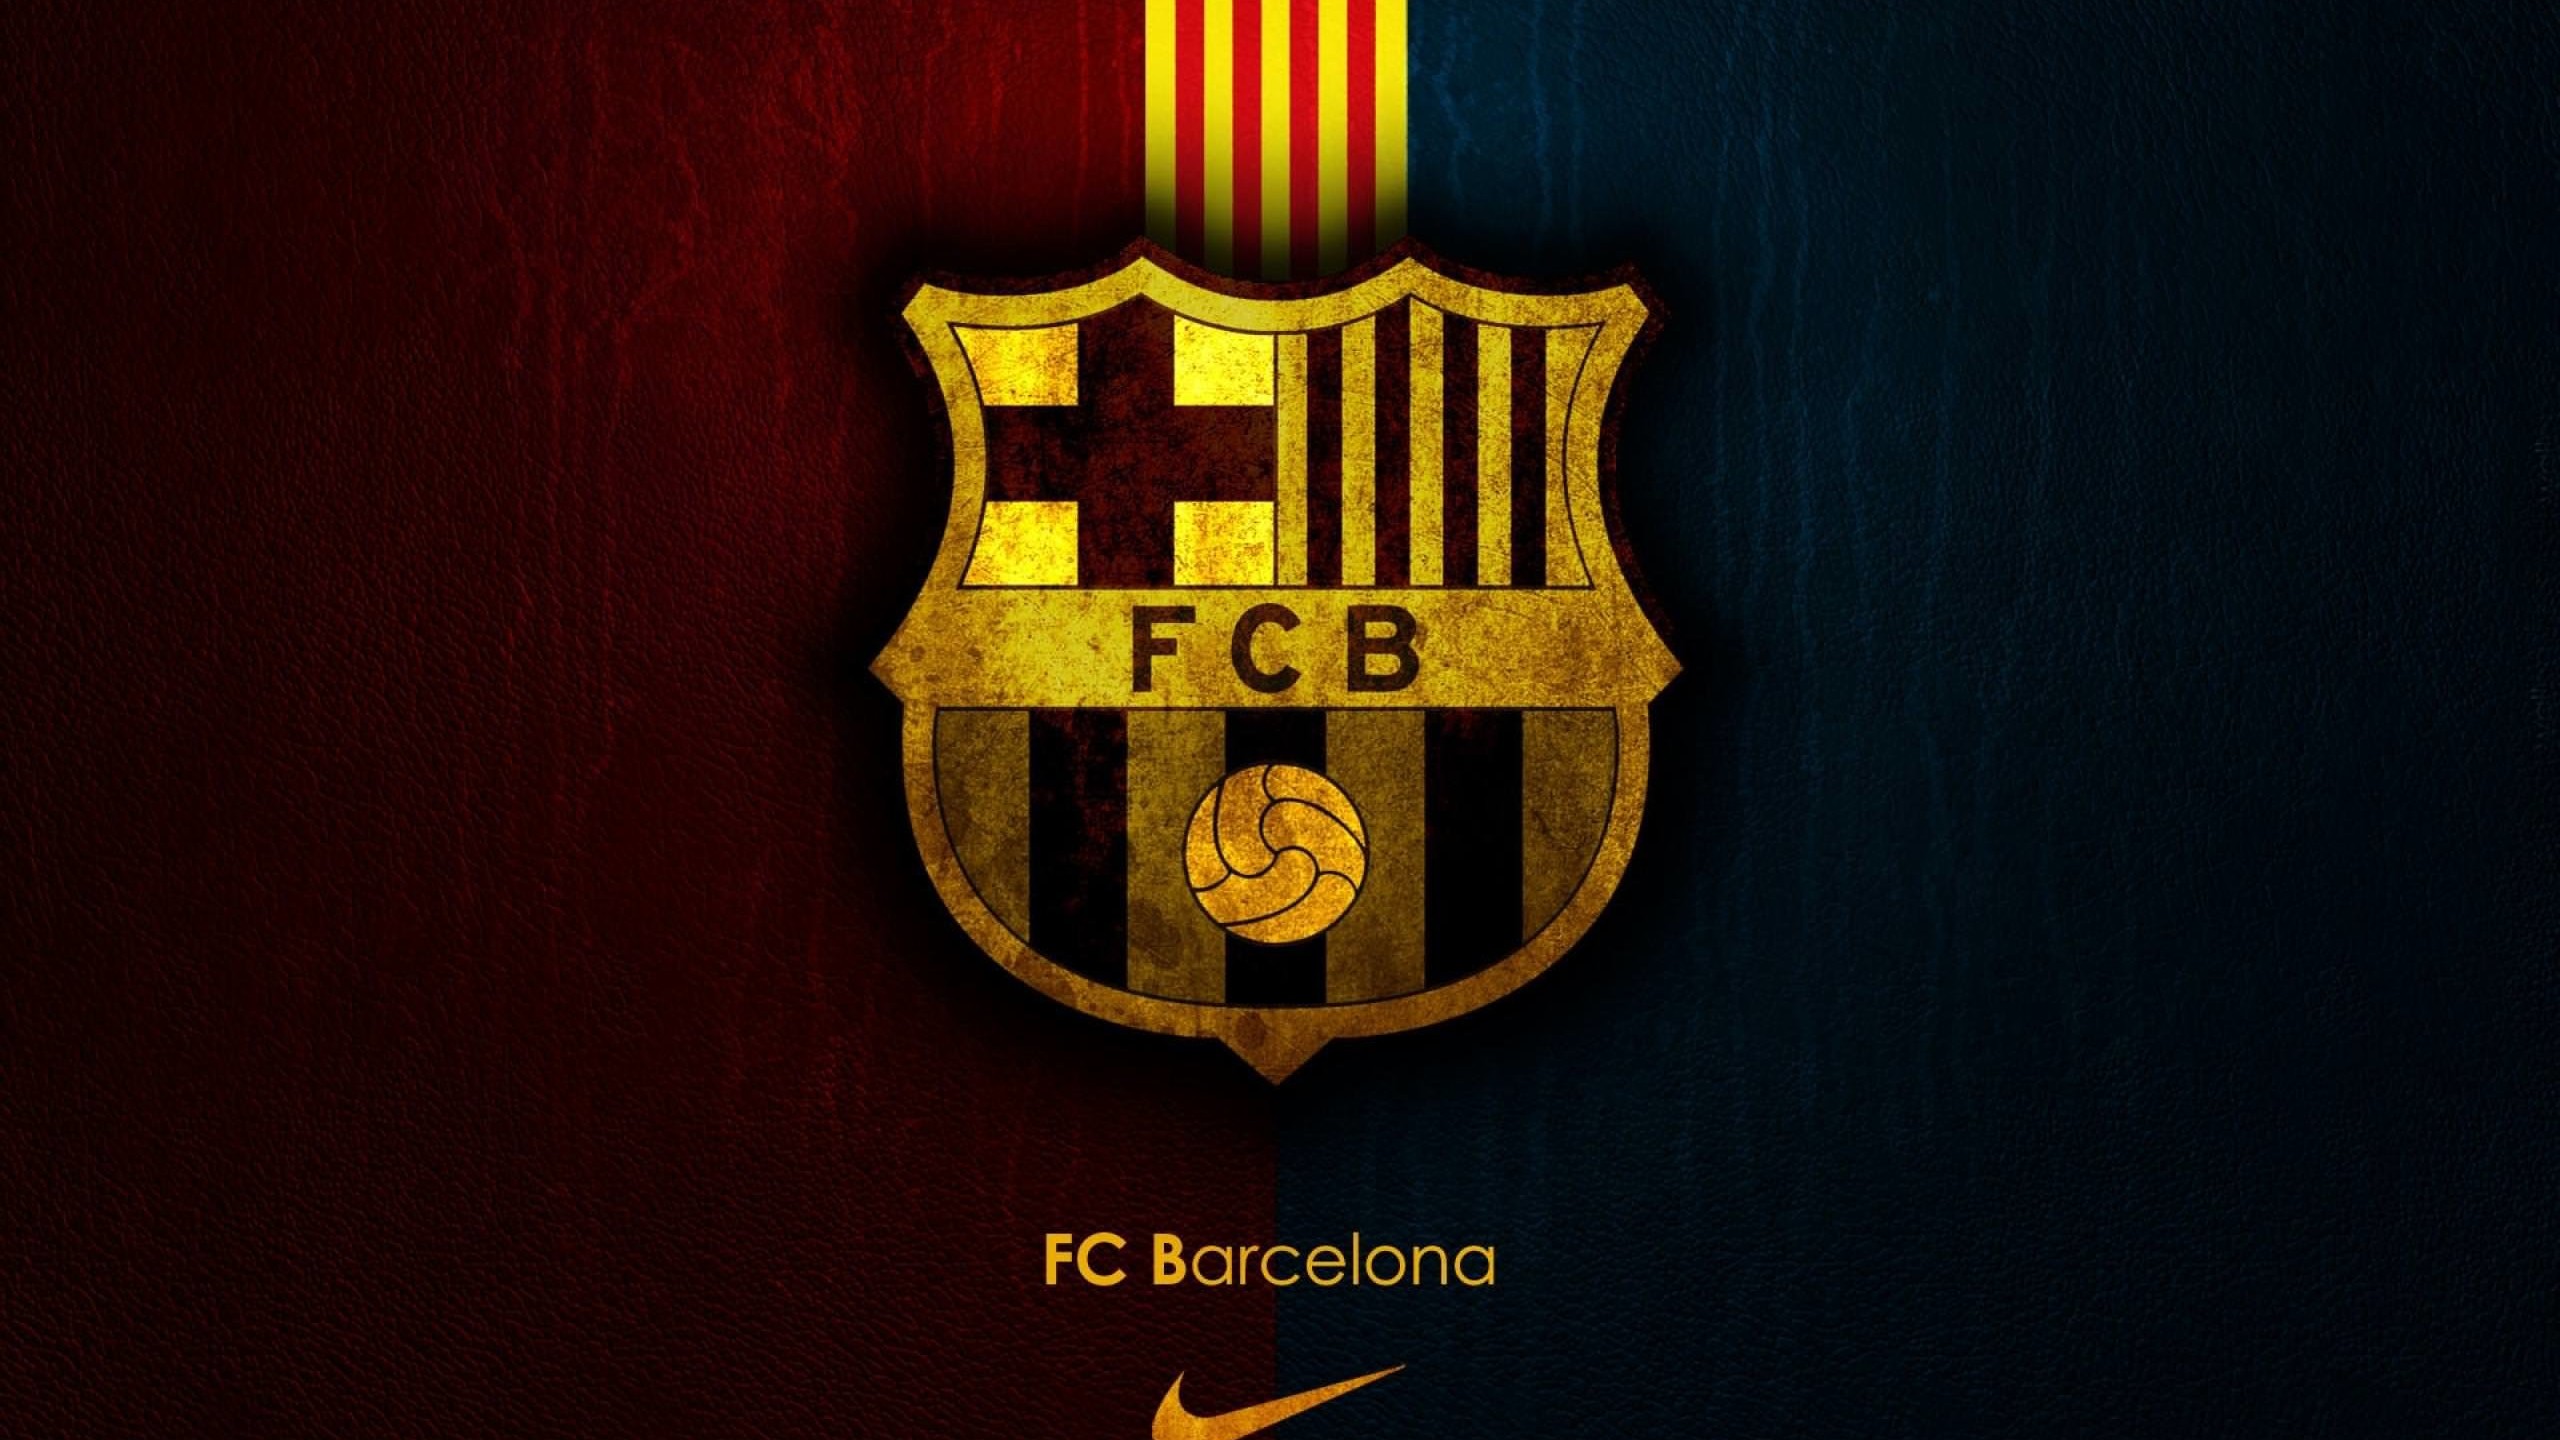 FC Barcelona Wallpaper for Social Media YouTube Channel Art